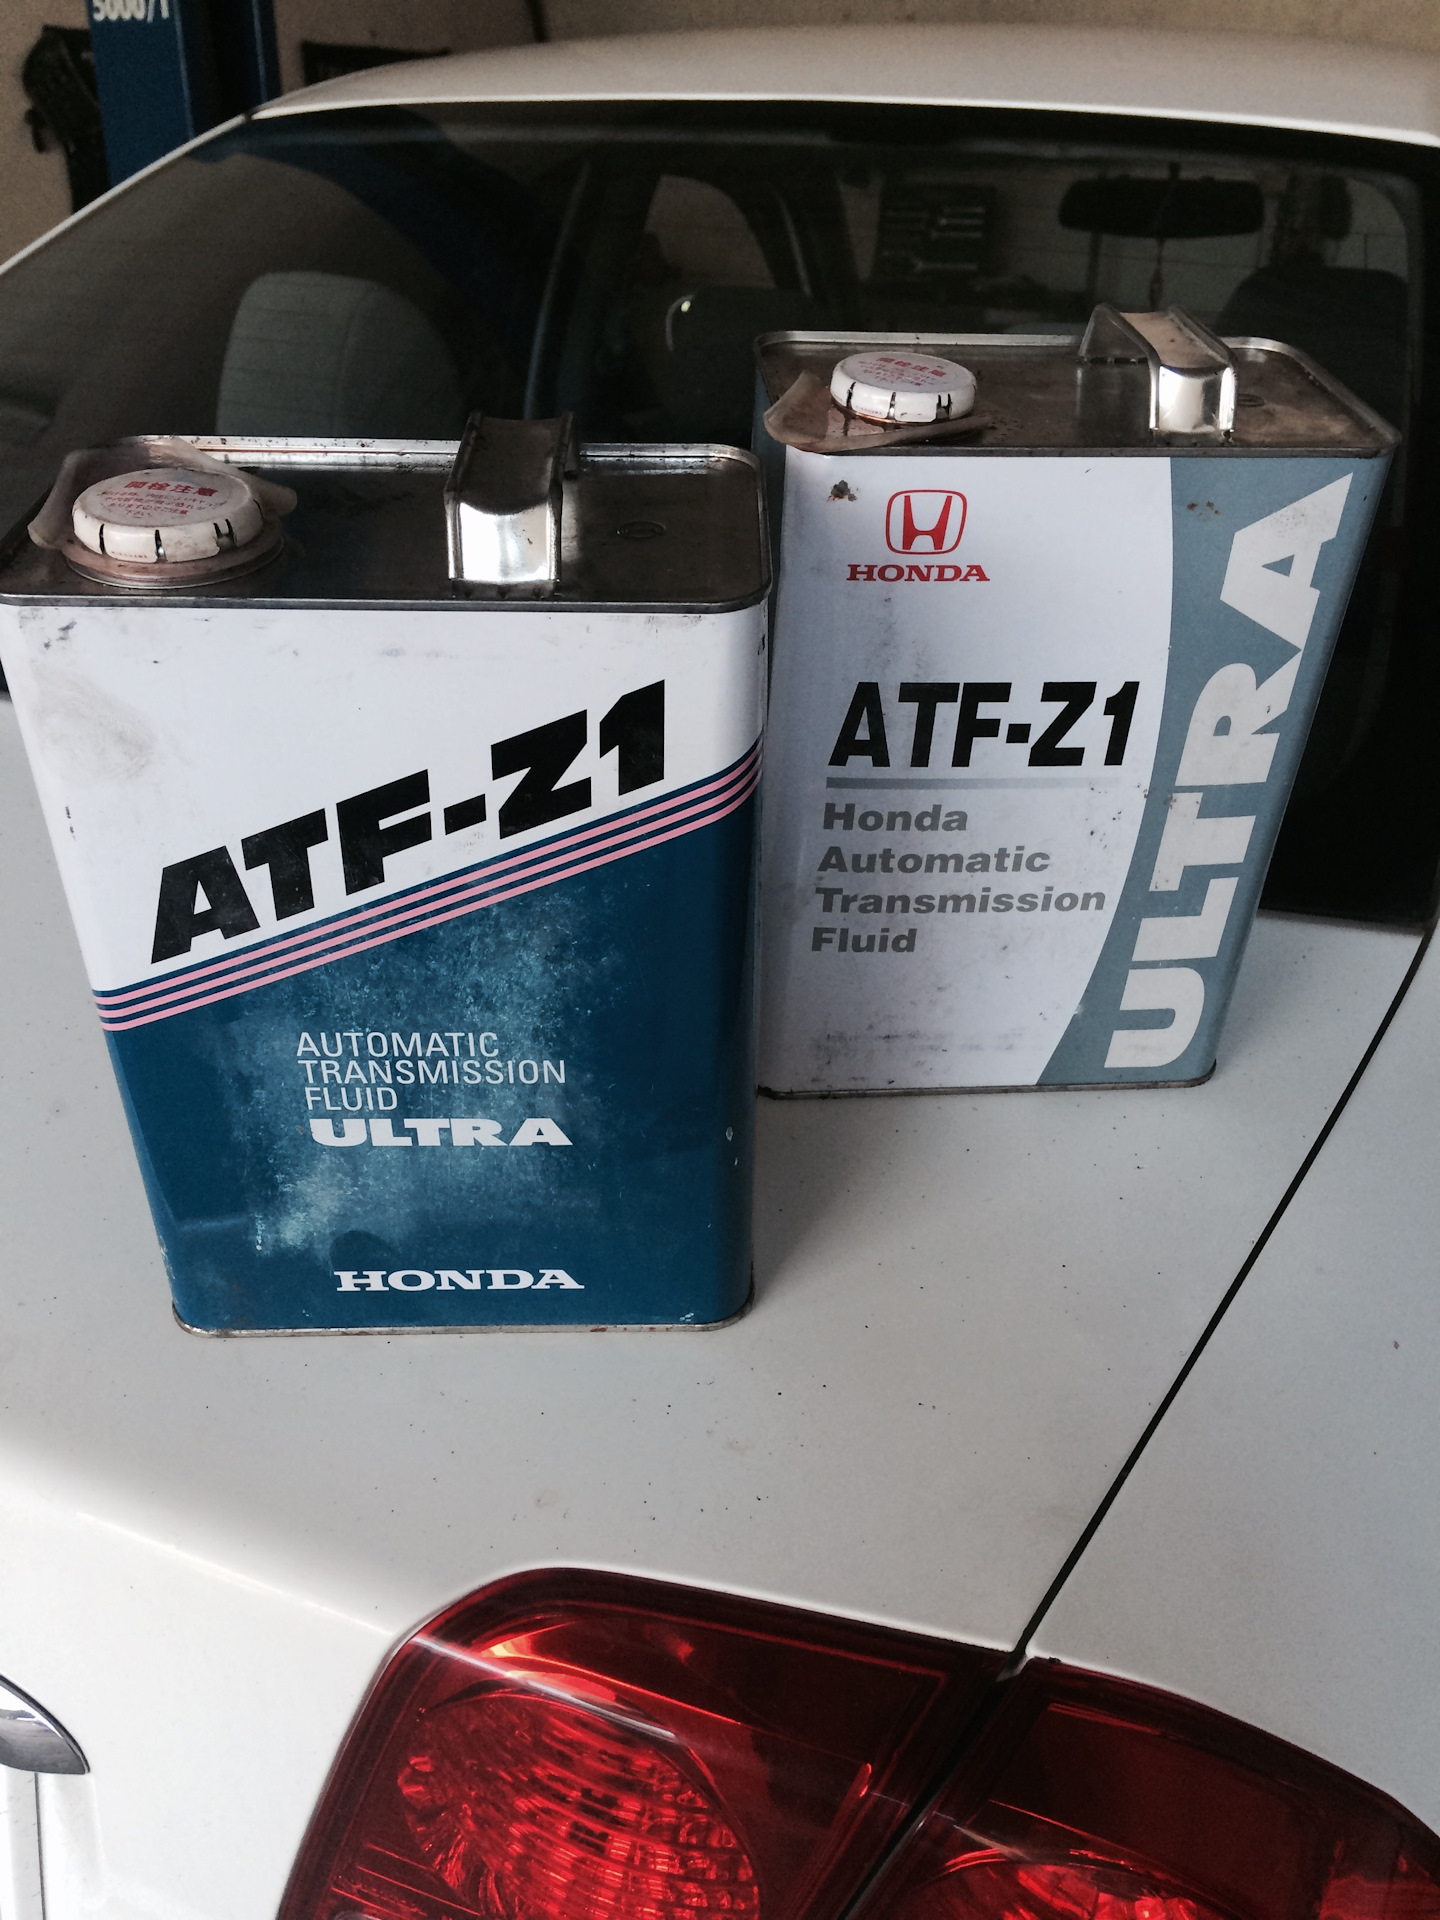 Atf z 1. Idemitsu ATF z1. Honda ATF Z-1. Idemitsu Honda ATF z1. ATF z1 аналоги идемитсу.